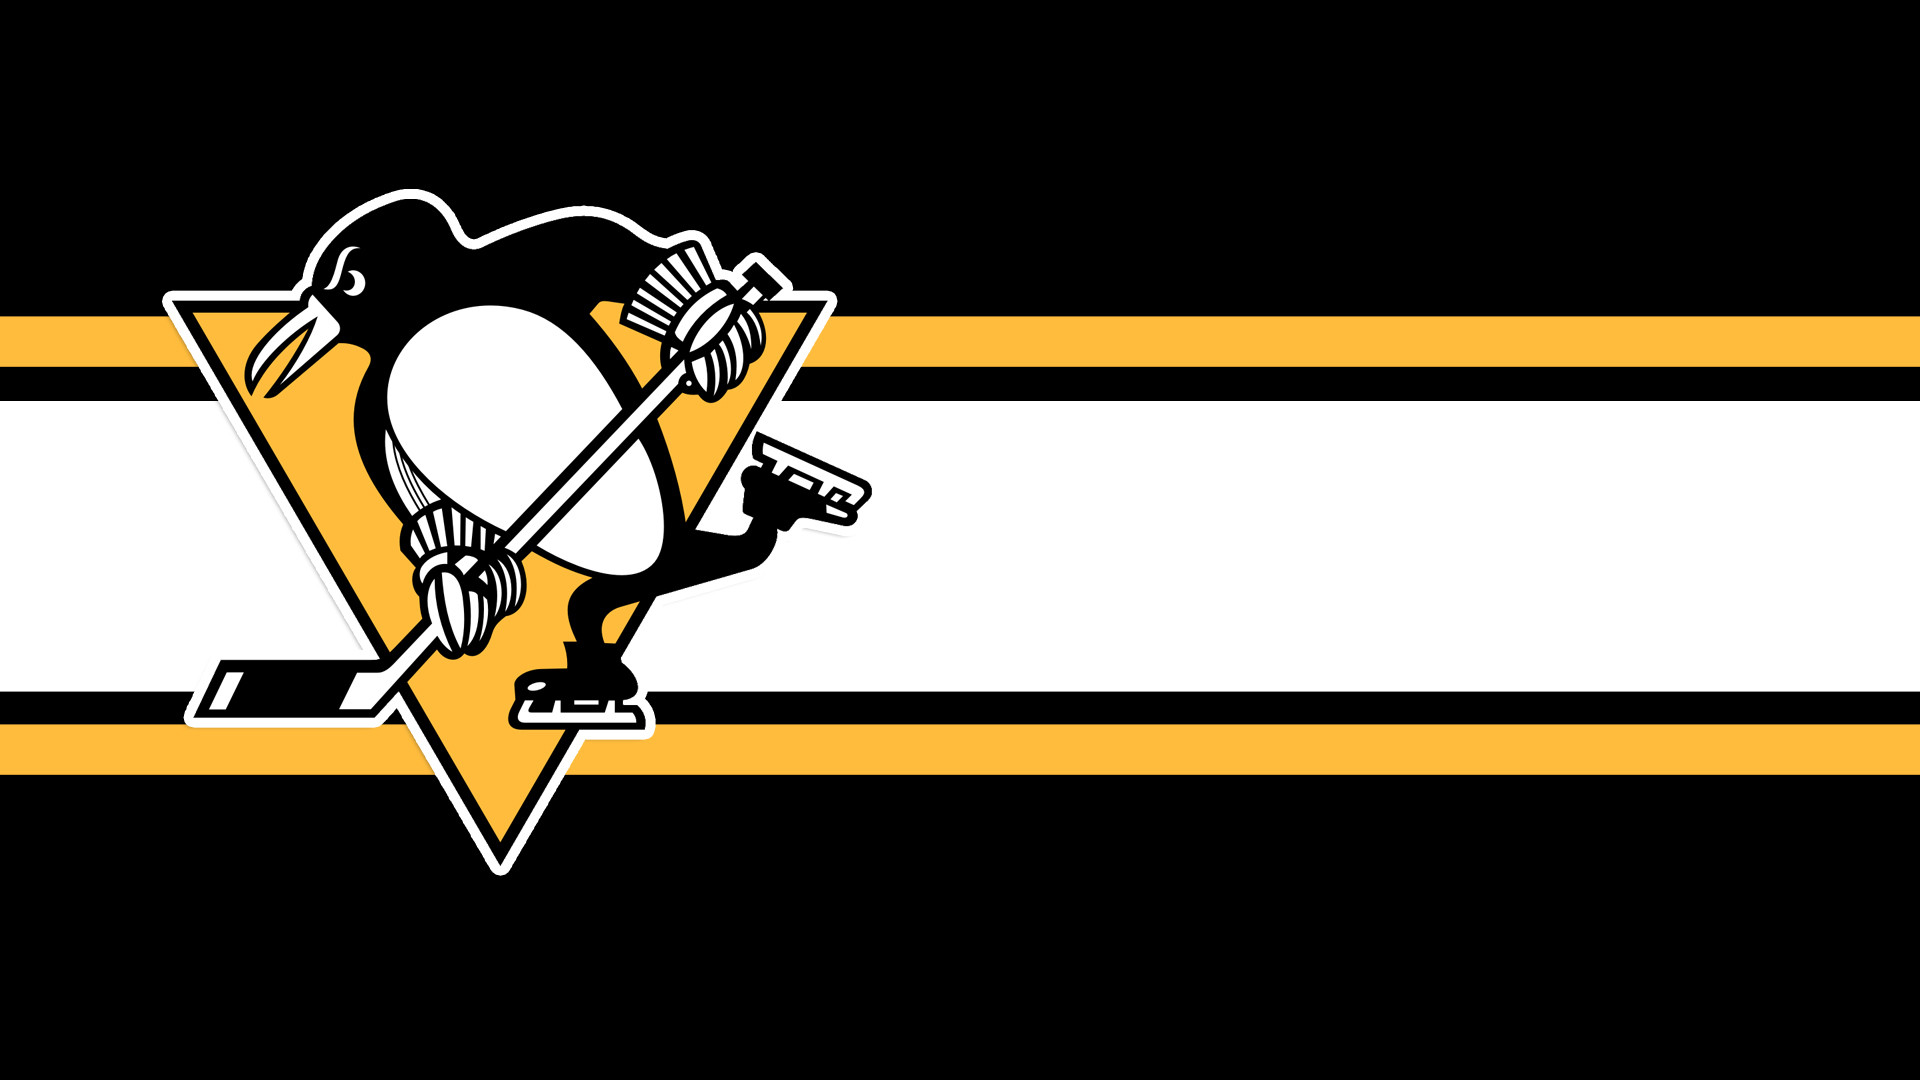 Хк питтсбург. Питтсбург Пингвинз. НХЛ Питтсбург Пингвинз. Хоккейная команда Питтсбург. Хк Питтсбург Пингвинз логотип.